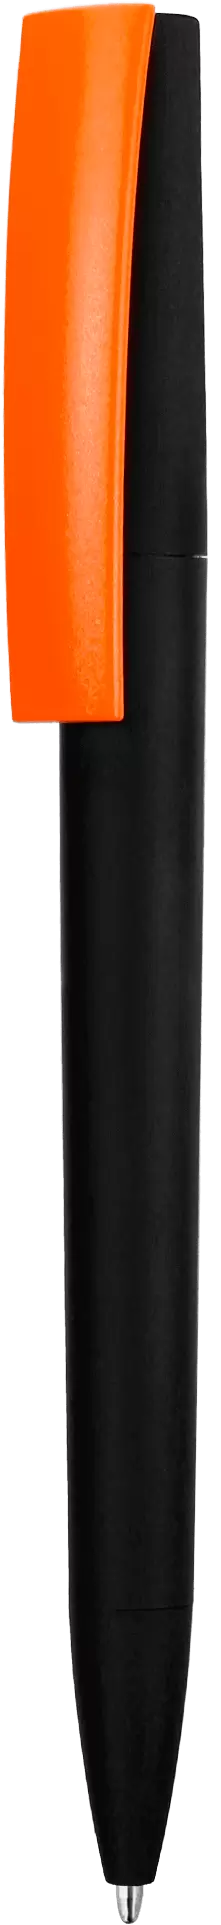 Ручка ZETA SOFT MIX Черная с оранжевым 1024-08-05